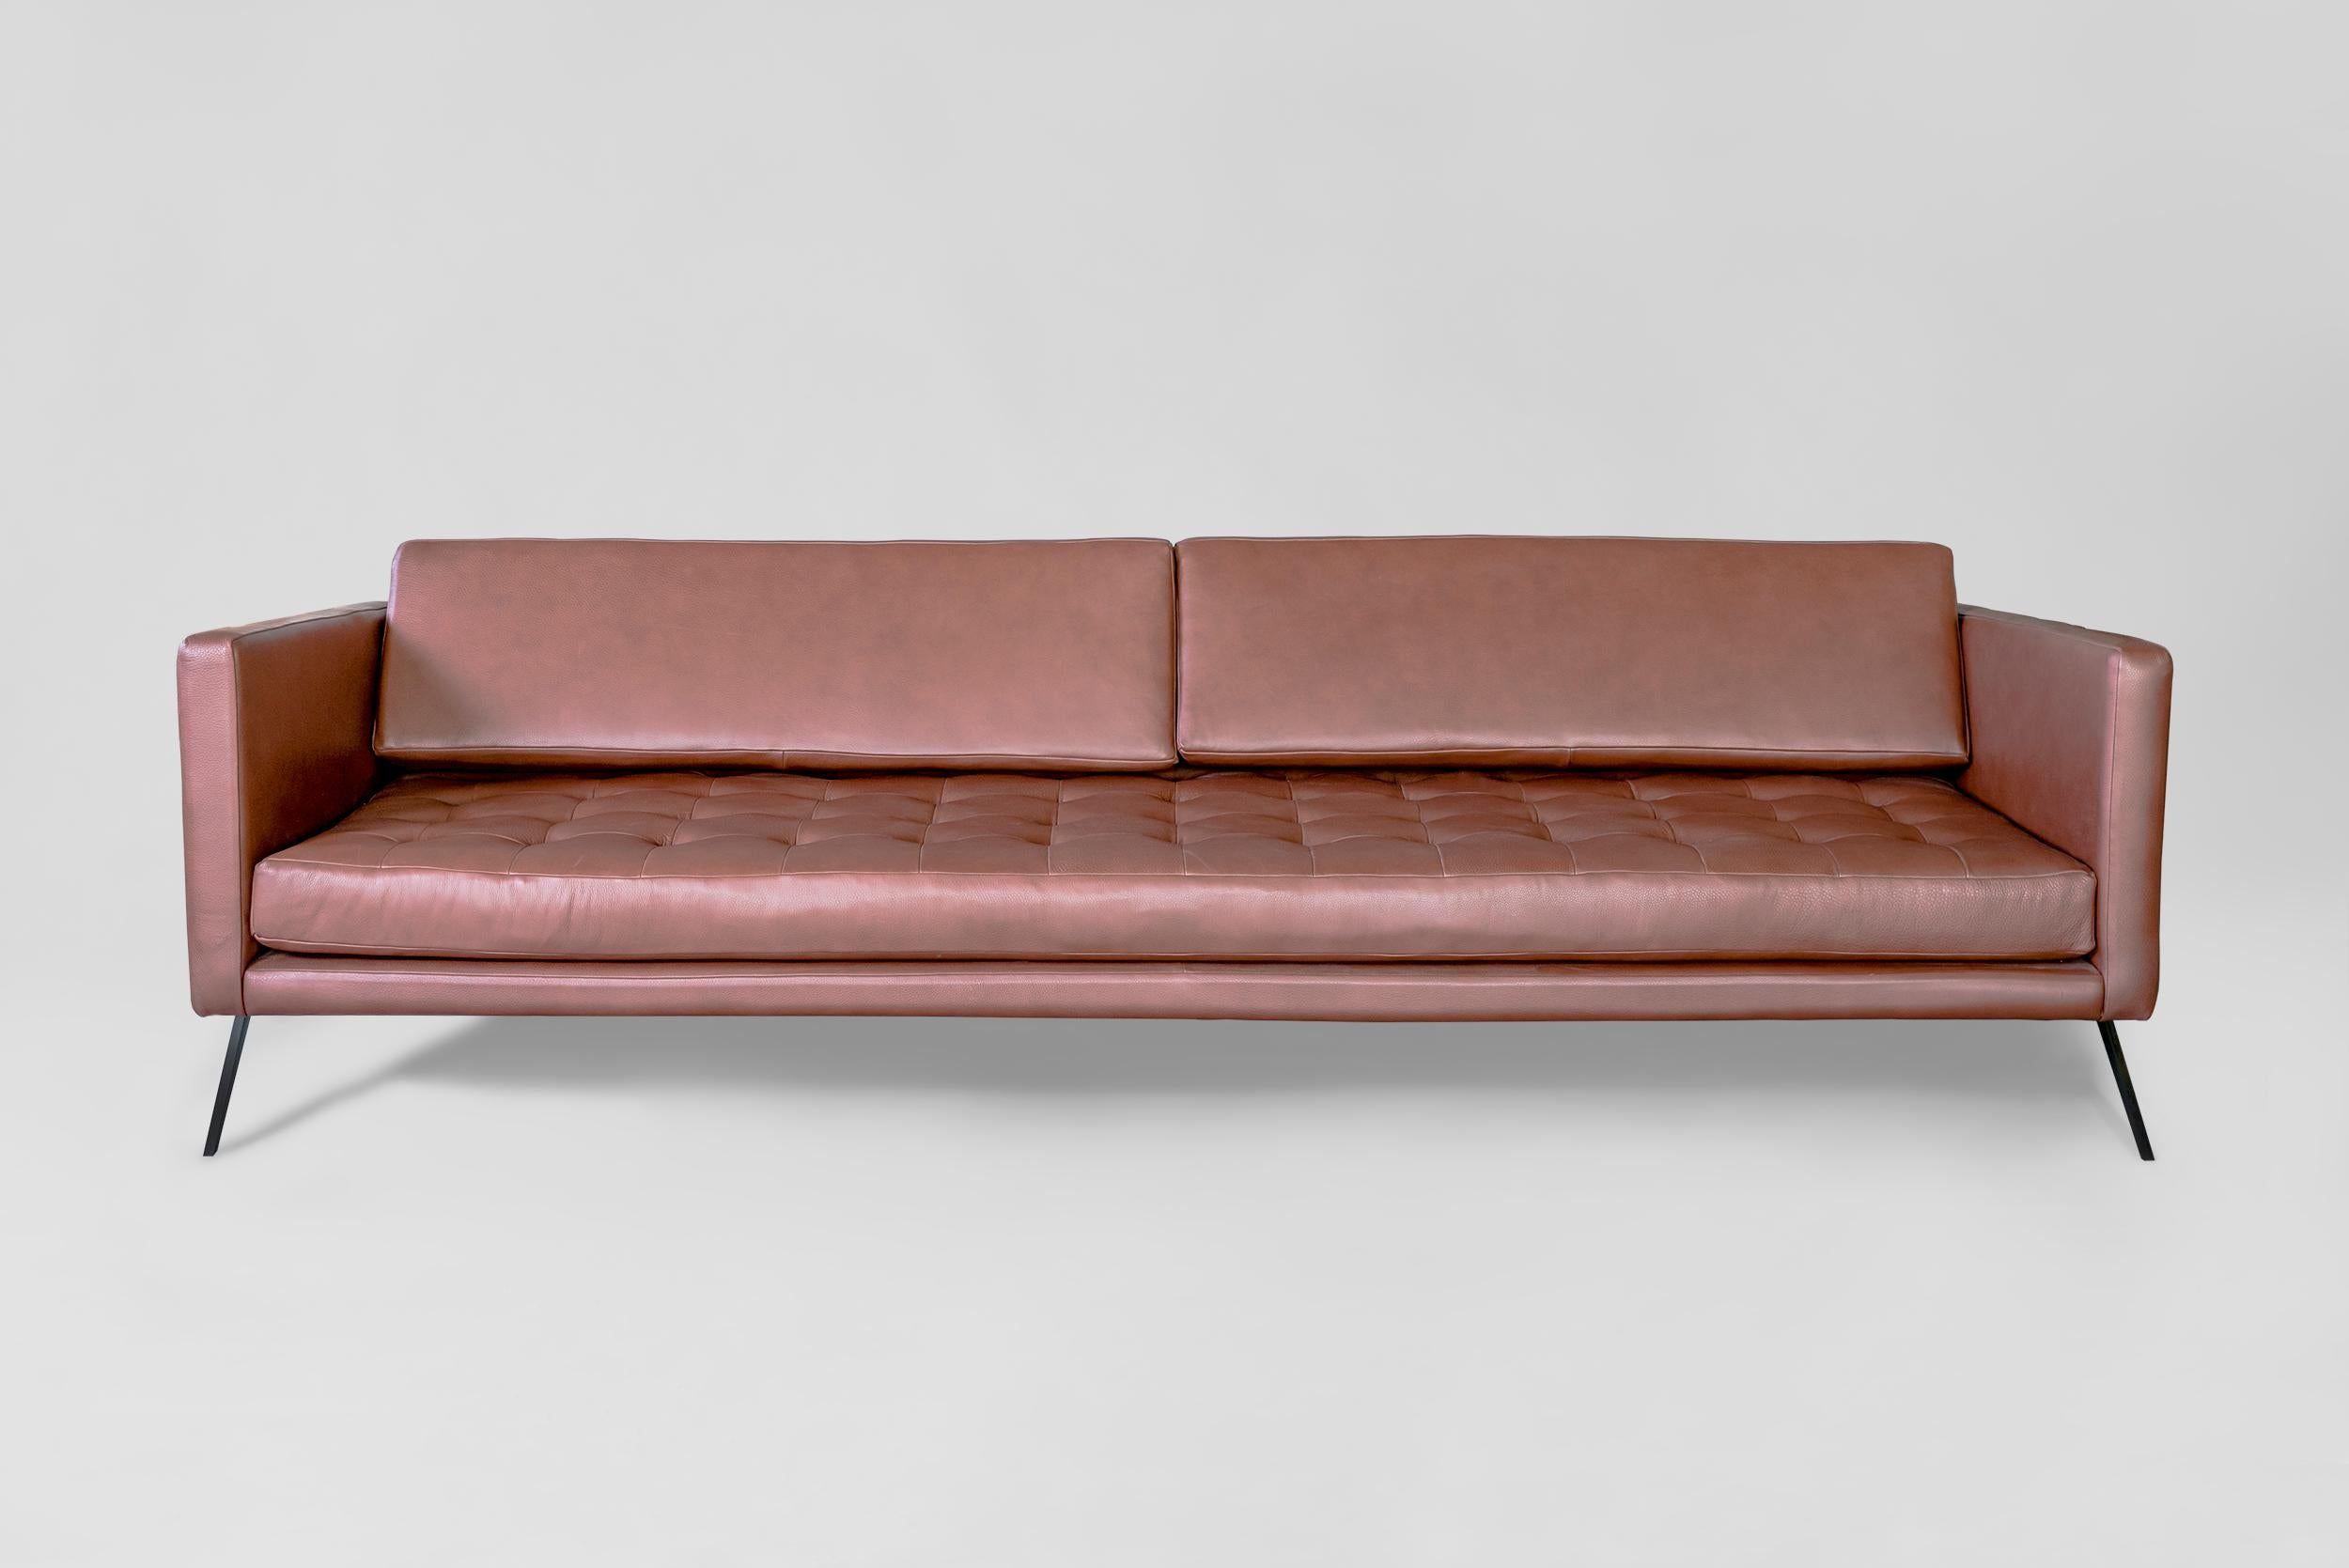 Sofa Mantis von Atra Design
Abmessungen: T 240 x B 92 x H 74 cm
MATERIALIEN: Leder, Stahl
Erhältlich in Leder oder Stoff.

Atra Design
Wir sind Atra, eine Möbelmarke, die von Atra form A, einer in Mexiko-Stadt ansässigen High-End-Produktionsstätte,